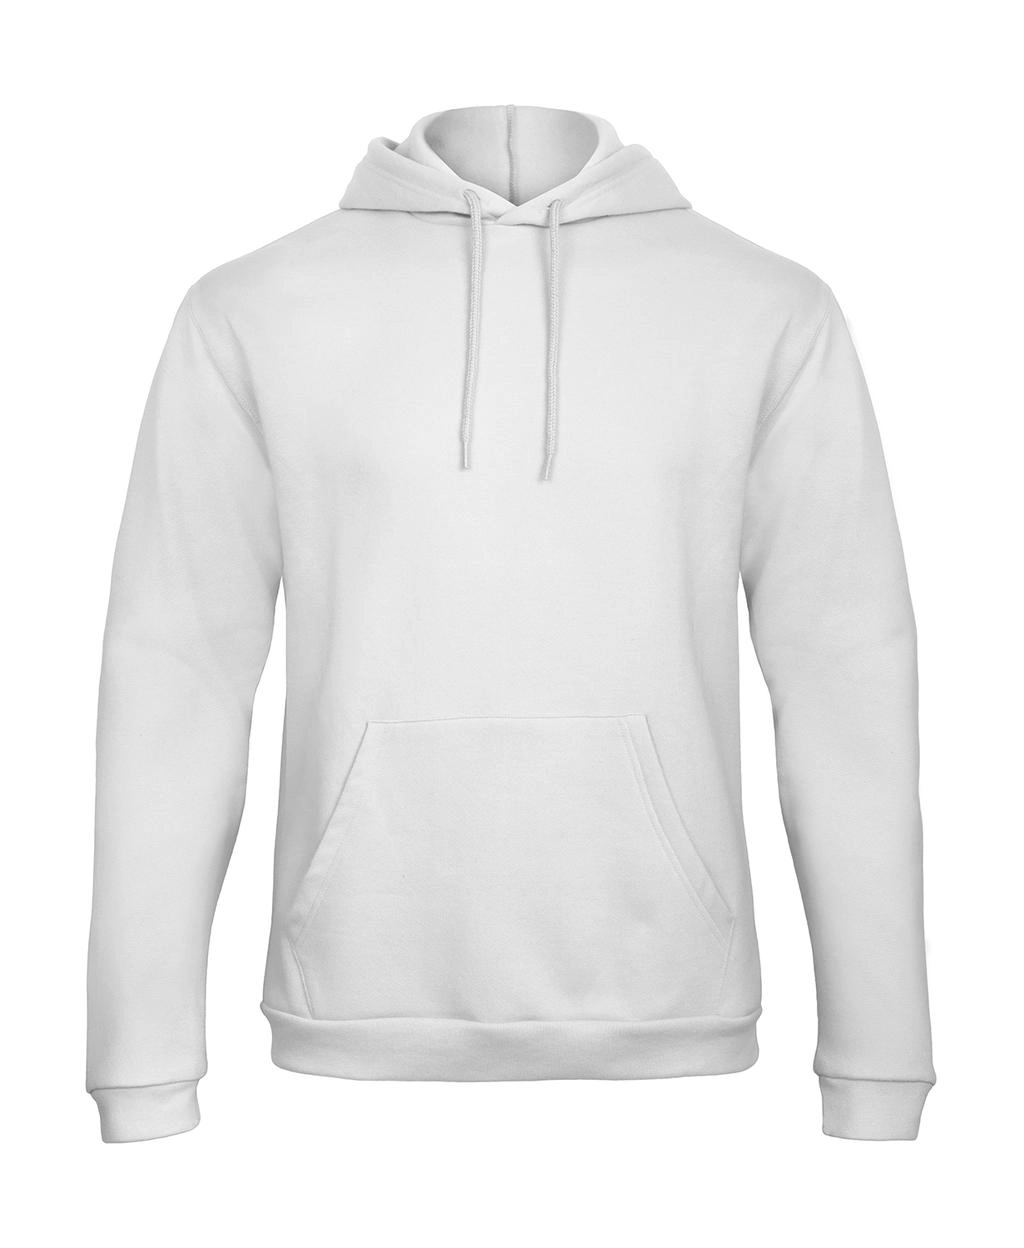 ID.203 50/50 Hooded Sweatshirt Unisex  zum Besticken und Bedrucken in der Farbe White mit Ihren Logo, Schriftzug oder Motiv.